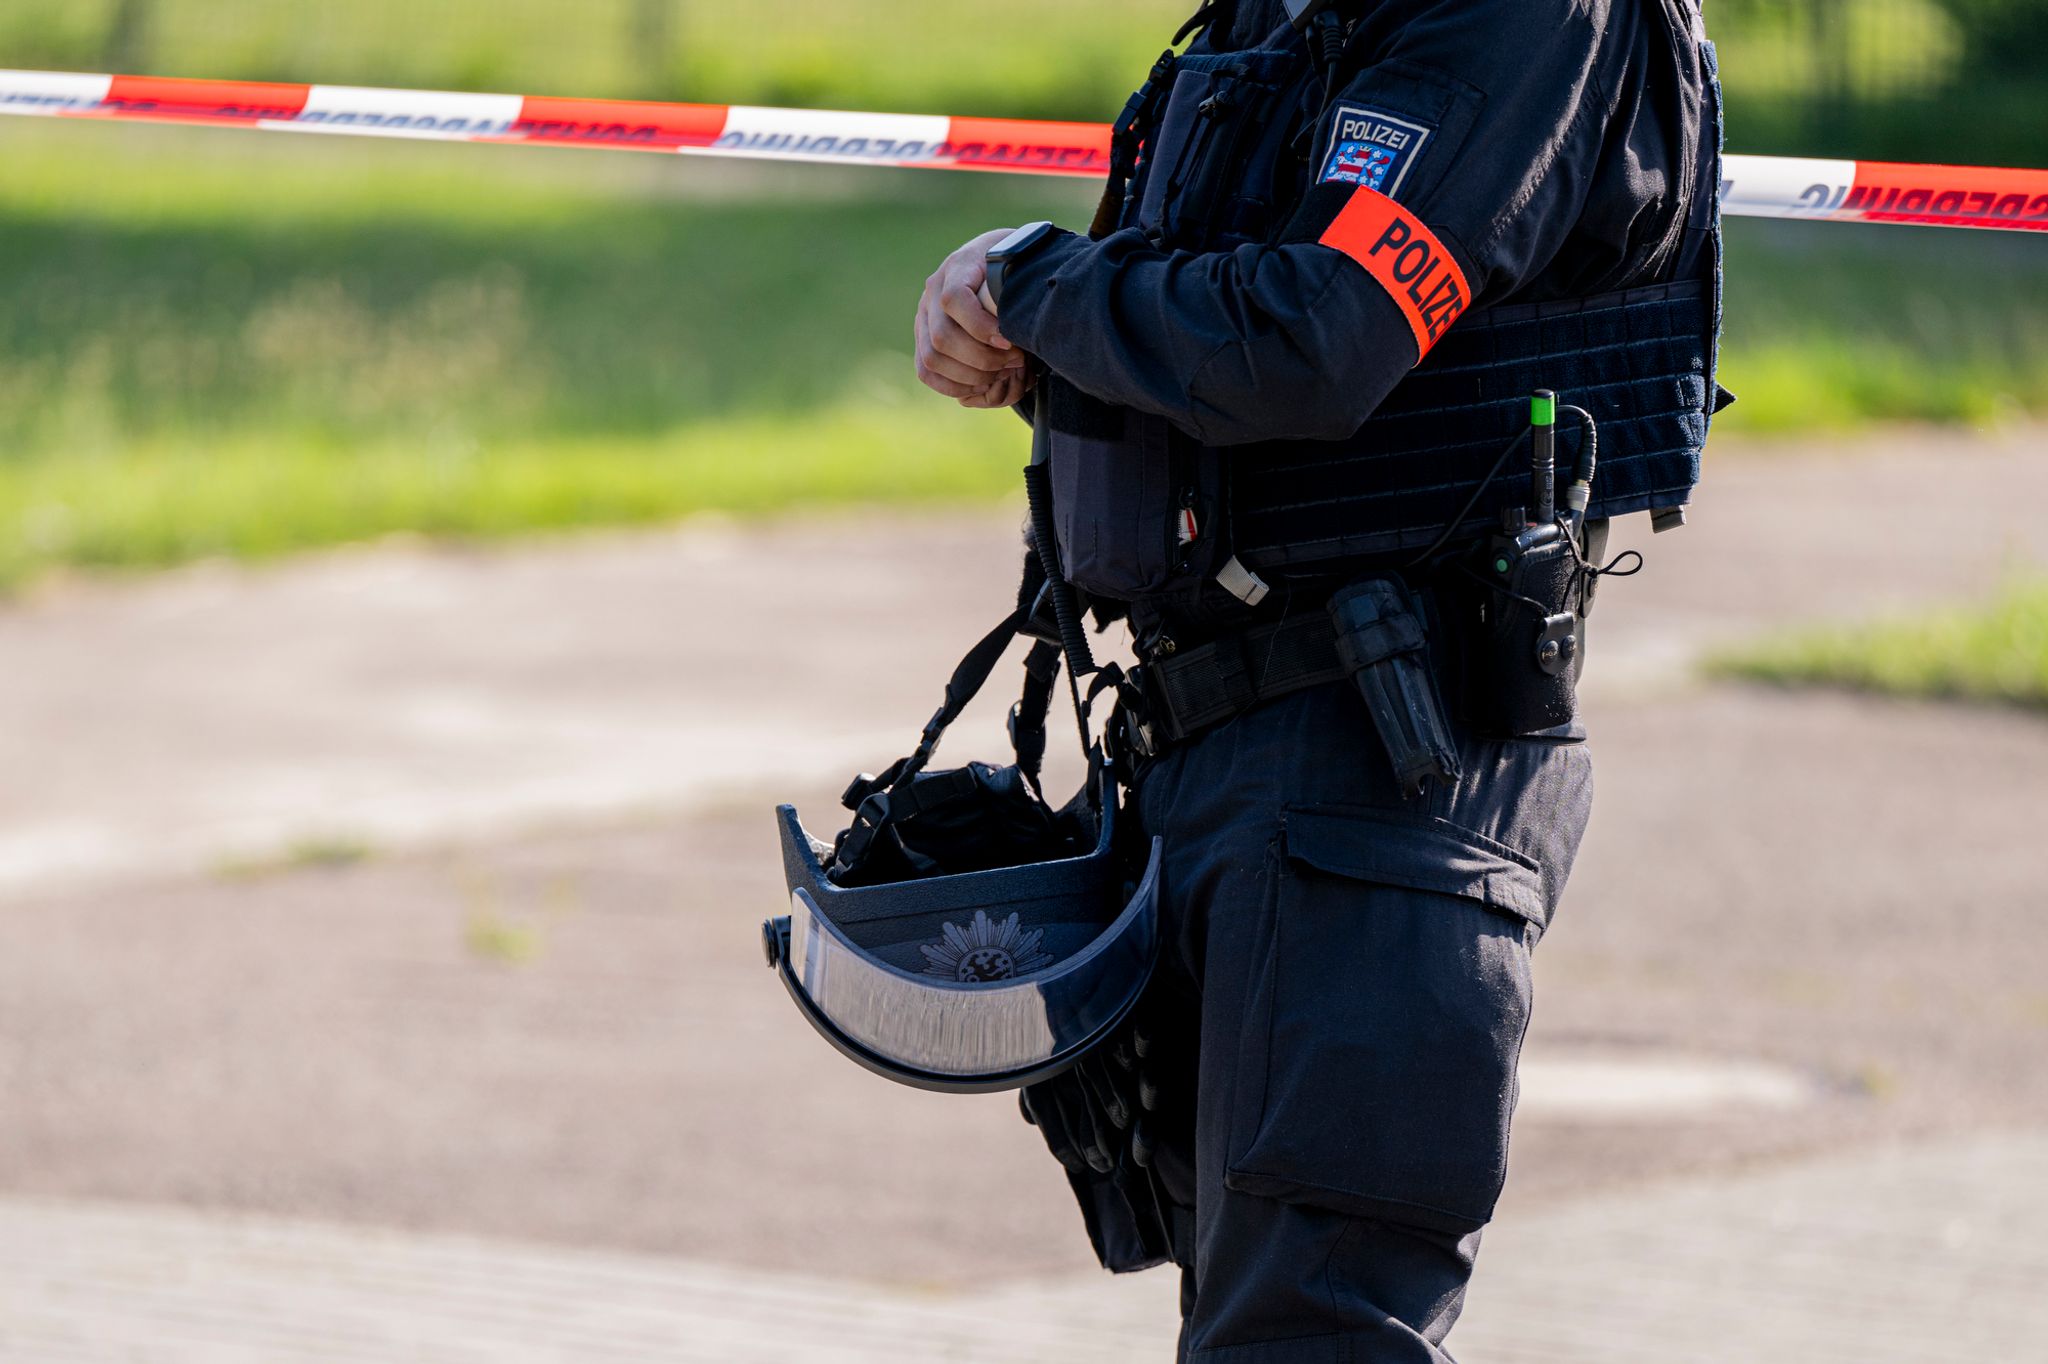 Mann in Erfurt erschossen 
Nach mutmalichem Mord in Erfurt: Ermittlungen laufen weiter. Jacob Schrter/dpa  DPA